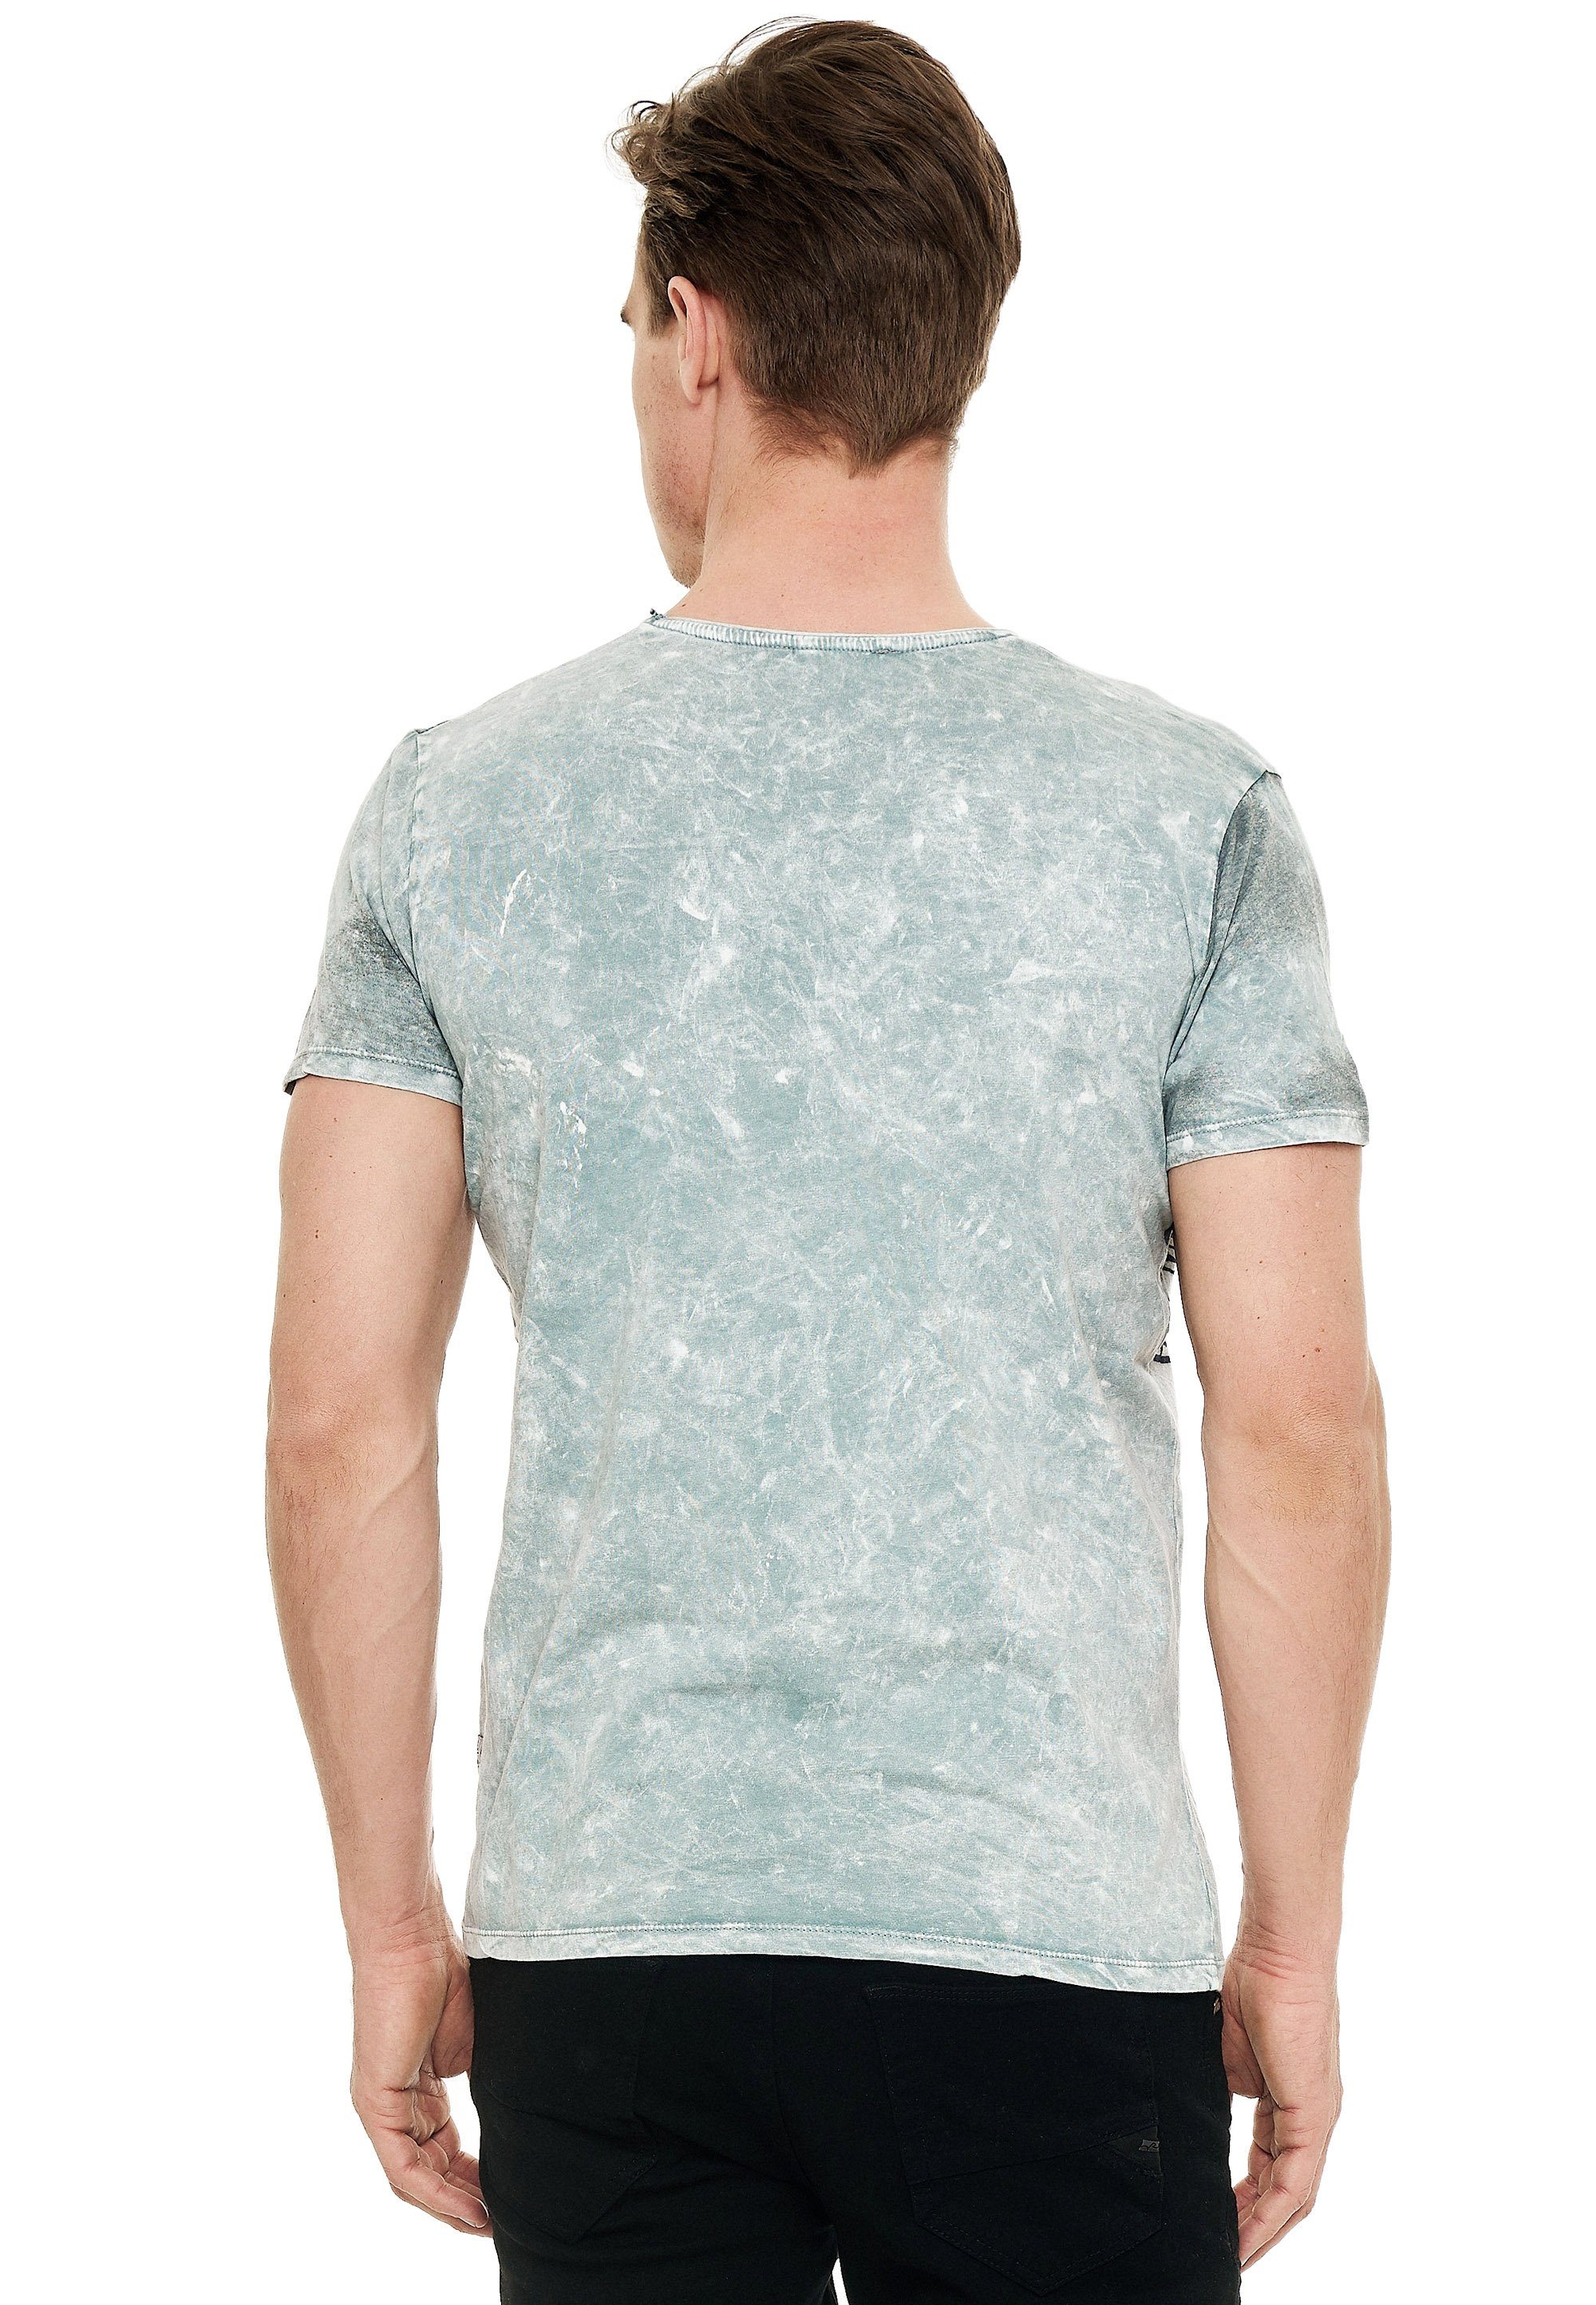 Rusty Neal T-Shirt mit eindrucksvollem Print grau